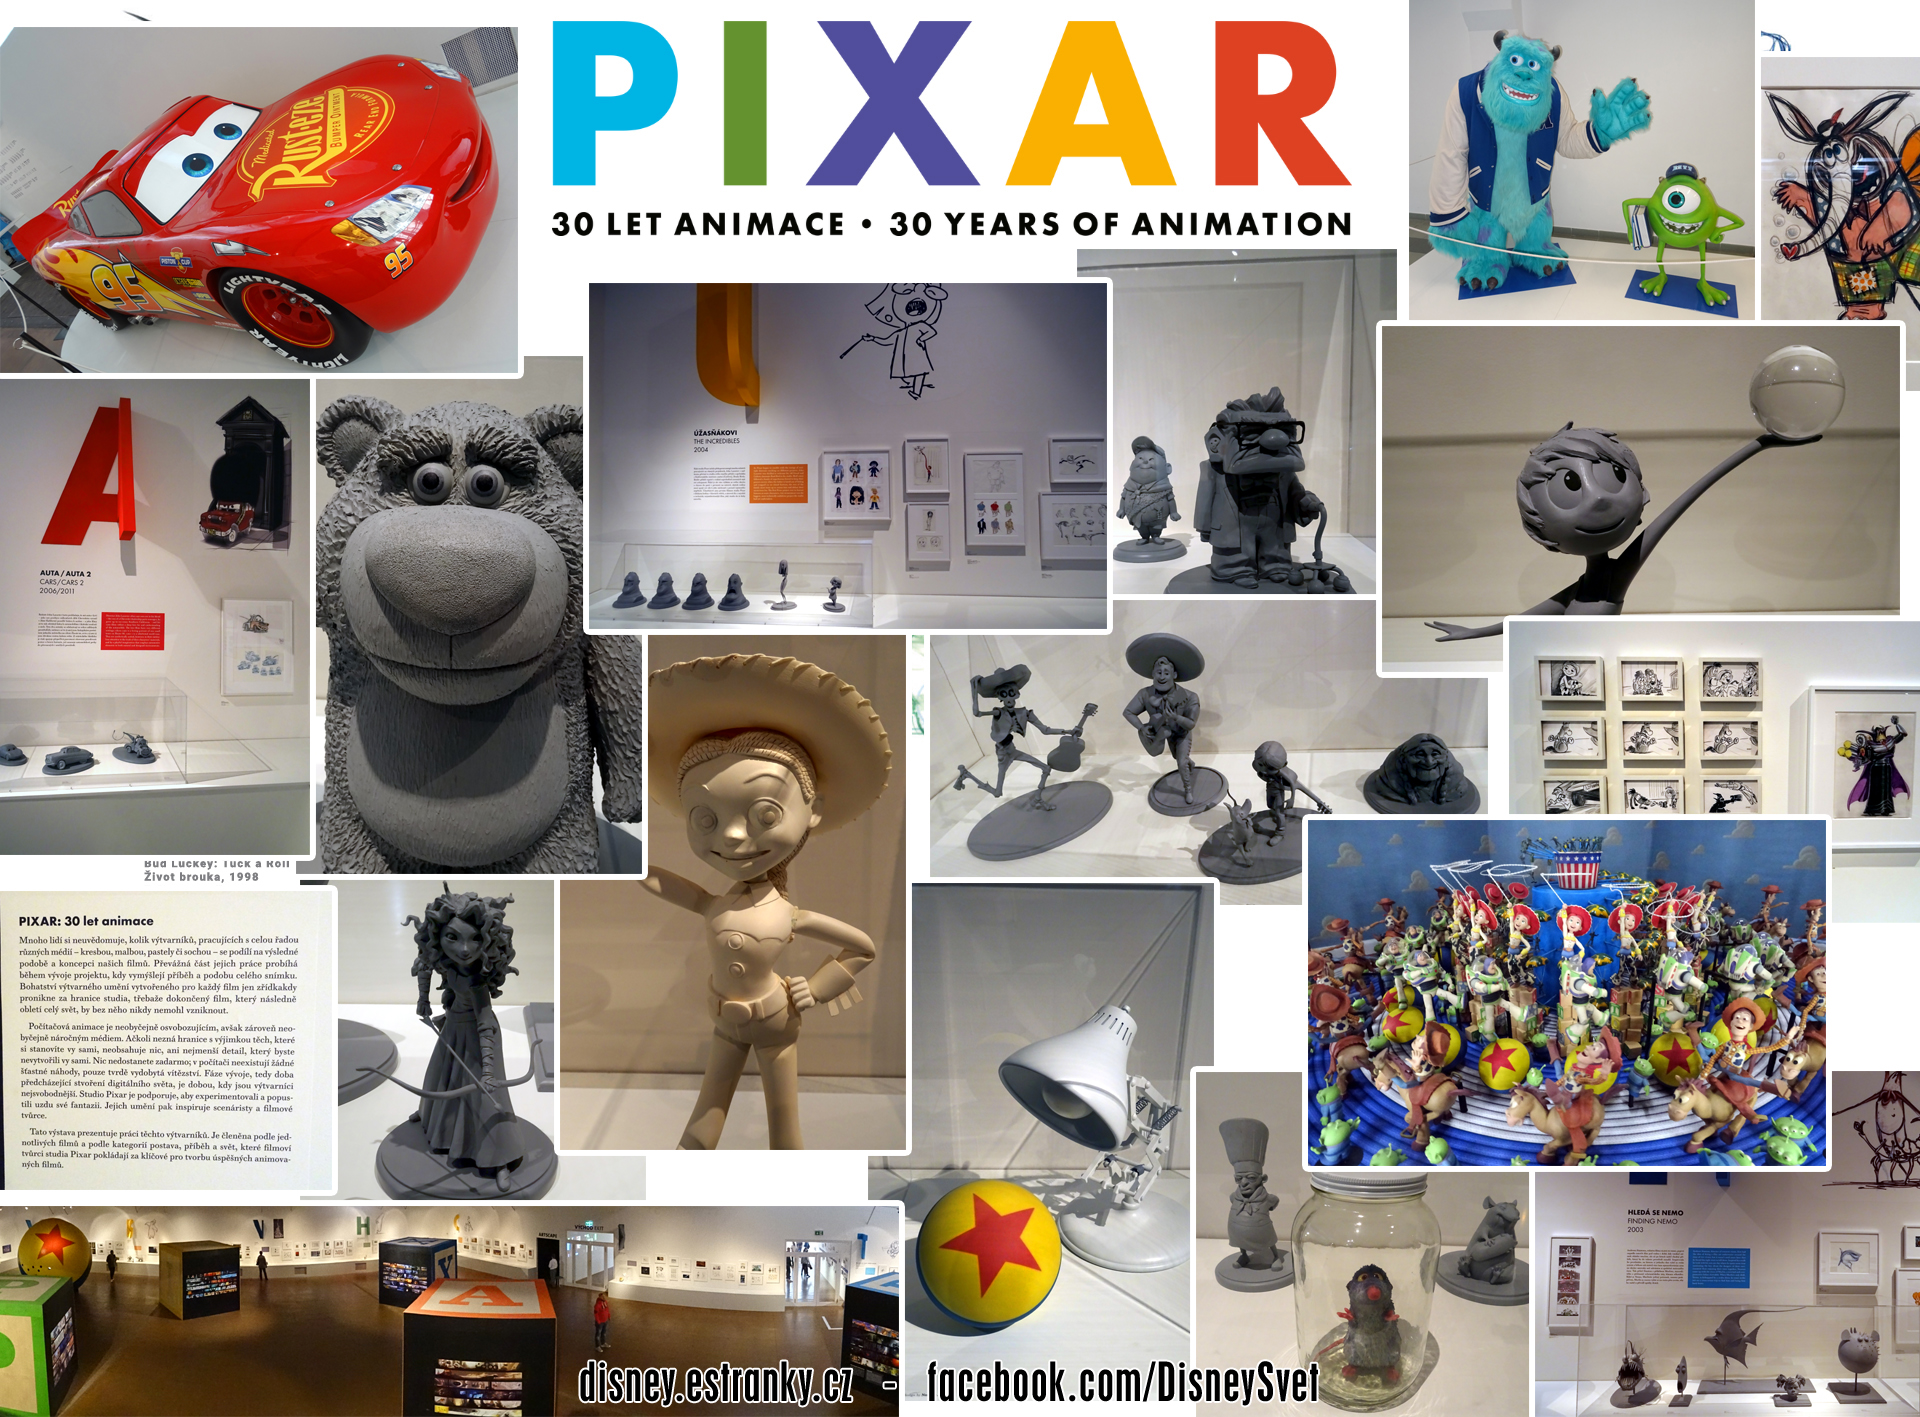 Pixar 30 let animace Praha 2019 jpg